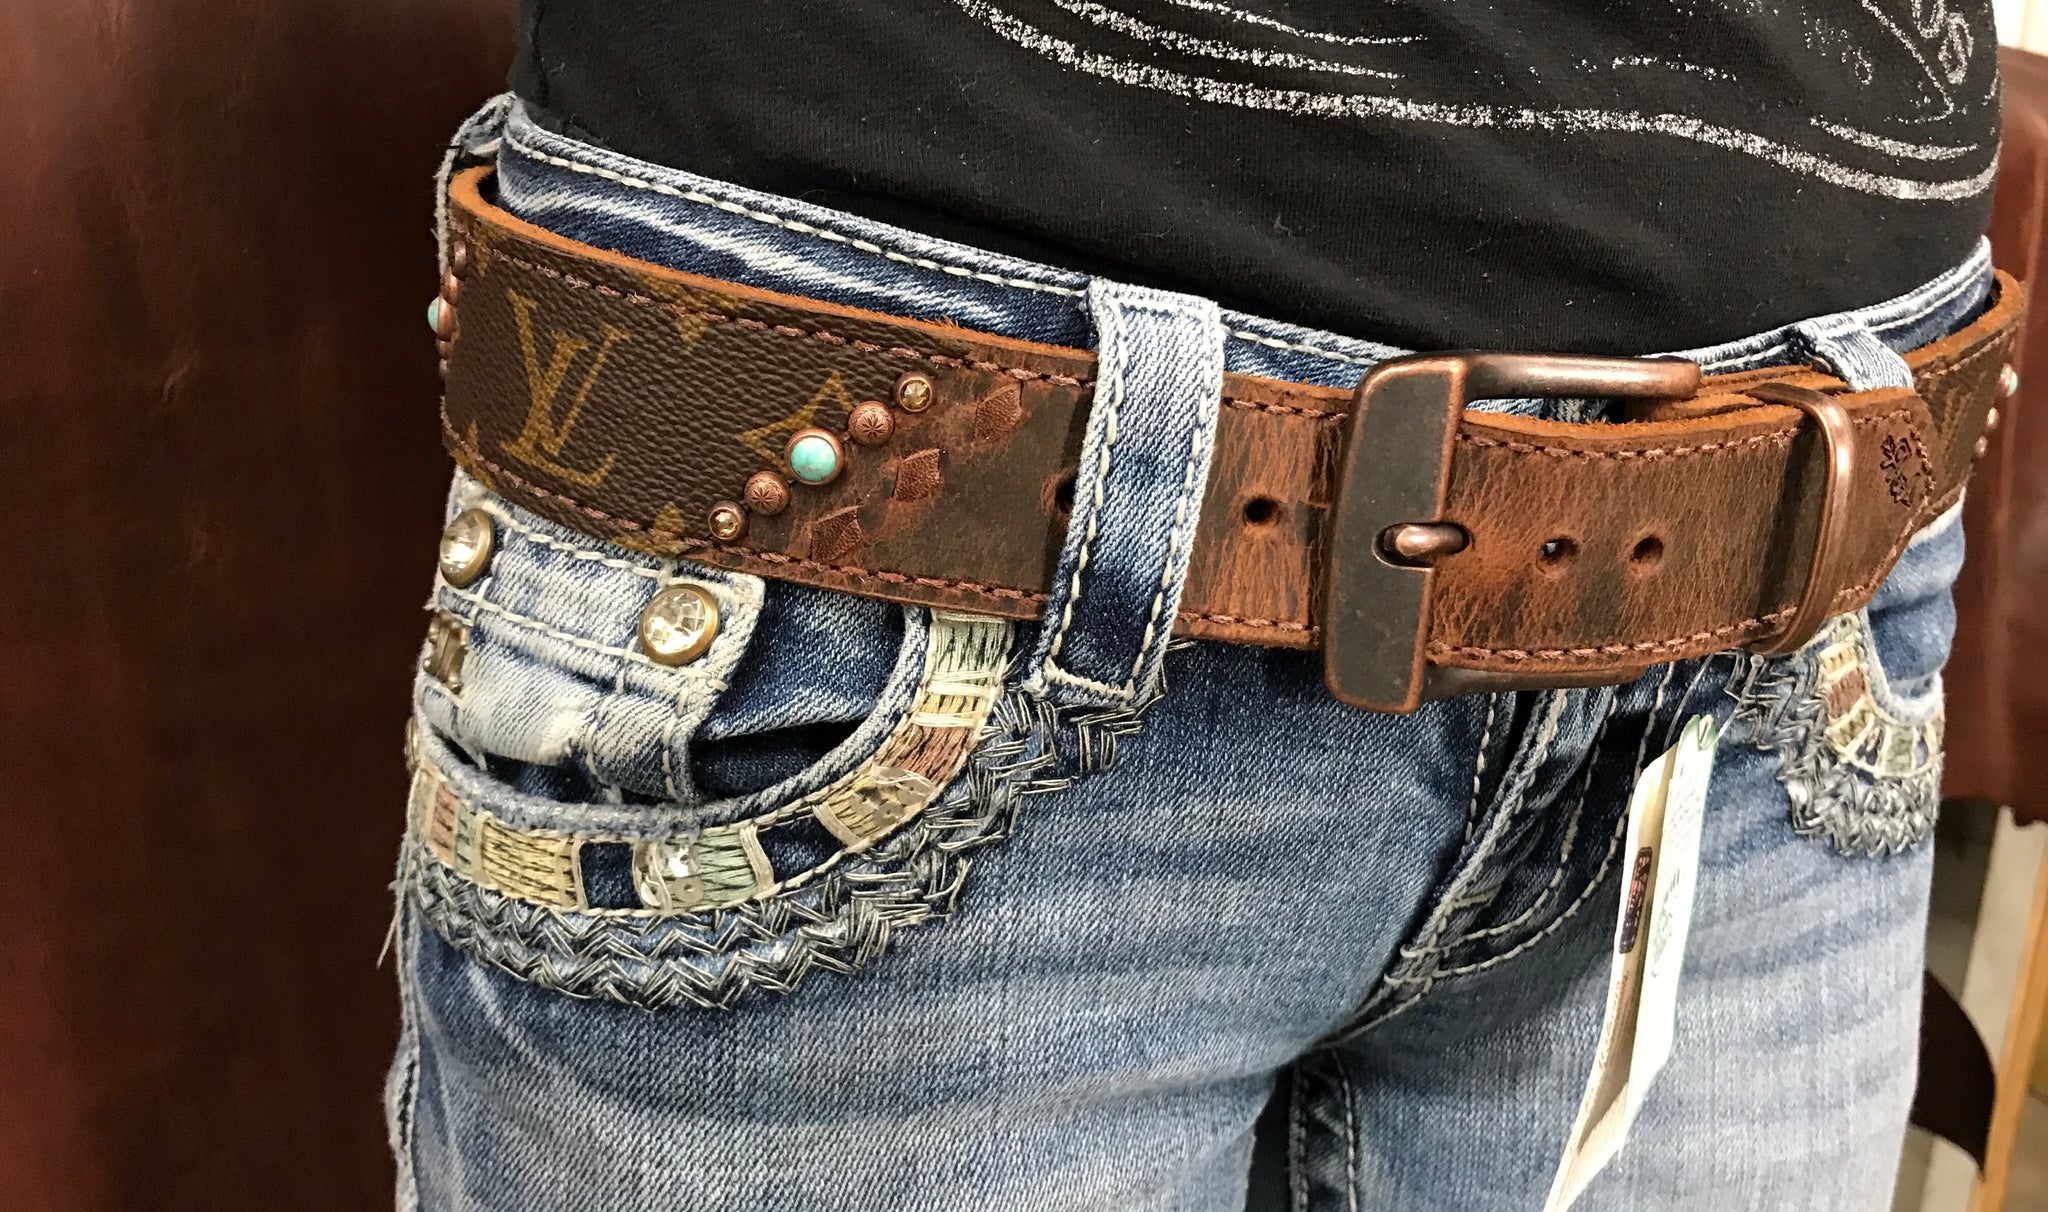 Bleu & brown LV belt